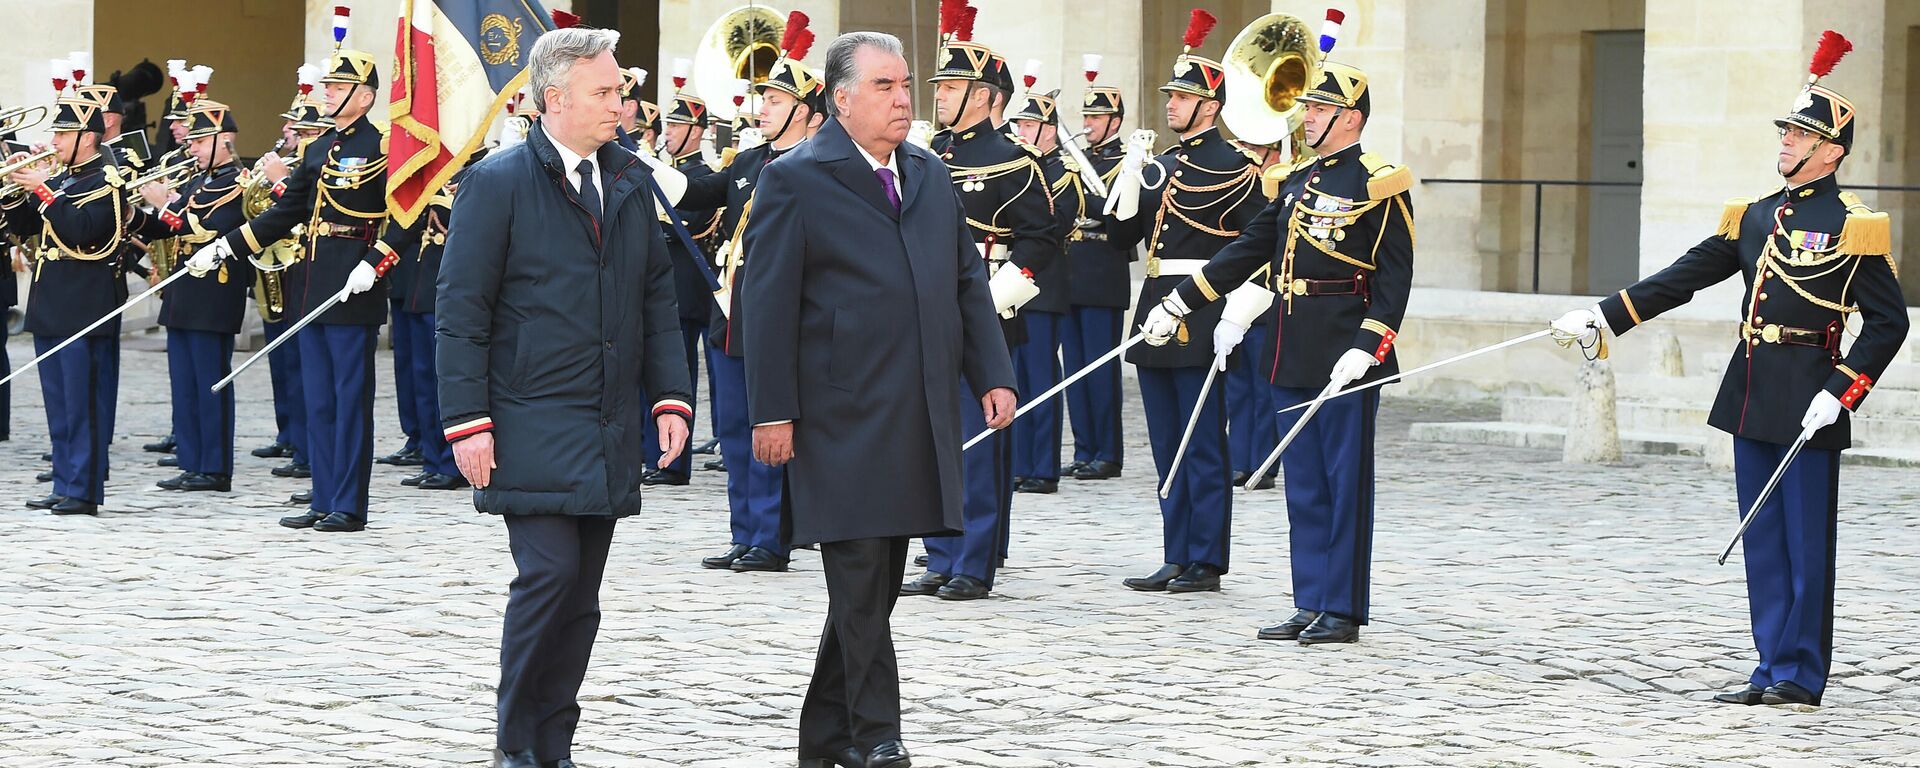 Президент Таджикистана Эмомали Рахмон и Государственный секретарь Министерства Европы и иностранных дел Франции Жан-Батист Лемуан - Sputnik Таджикистан, 1920, 13.10.2021